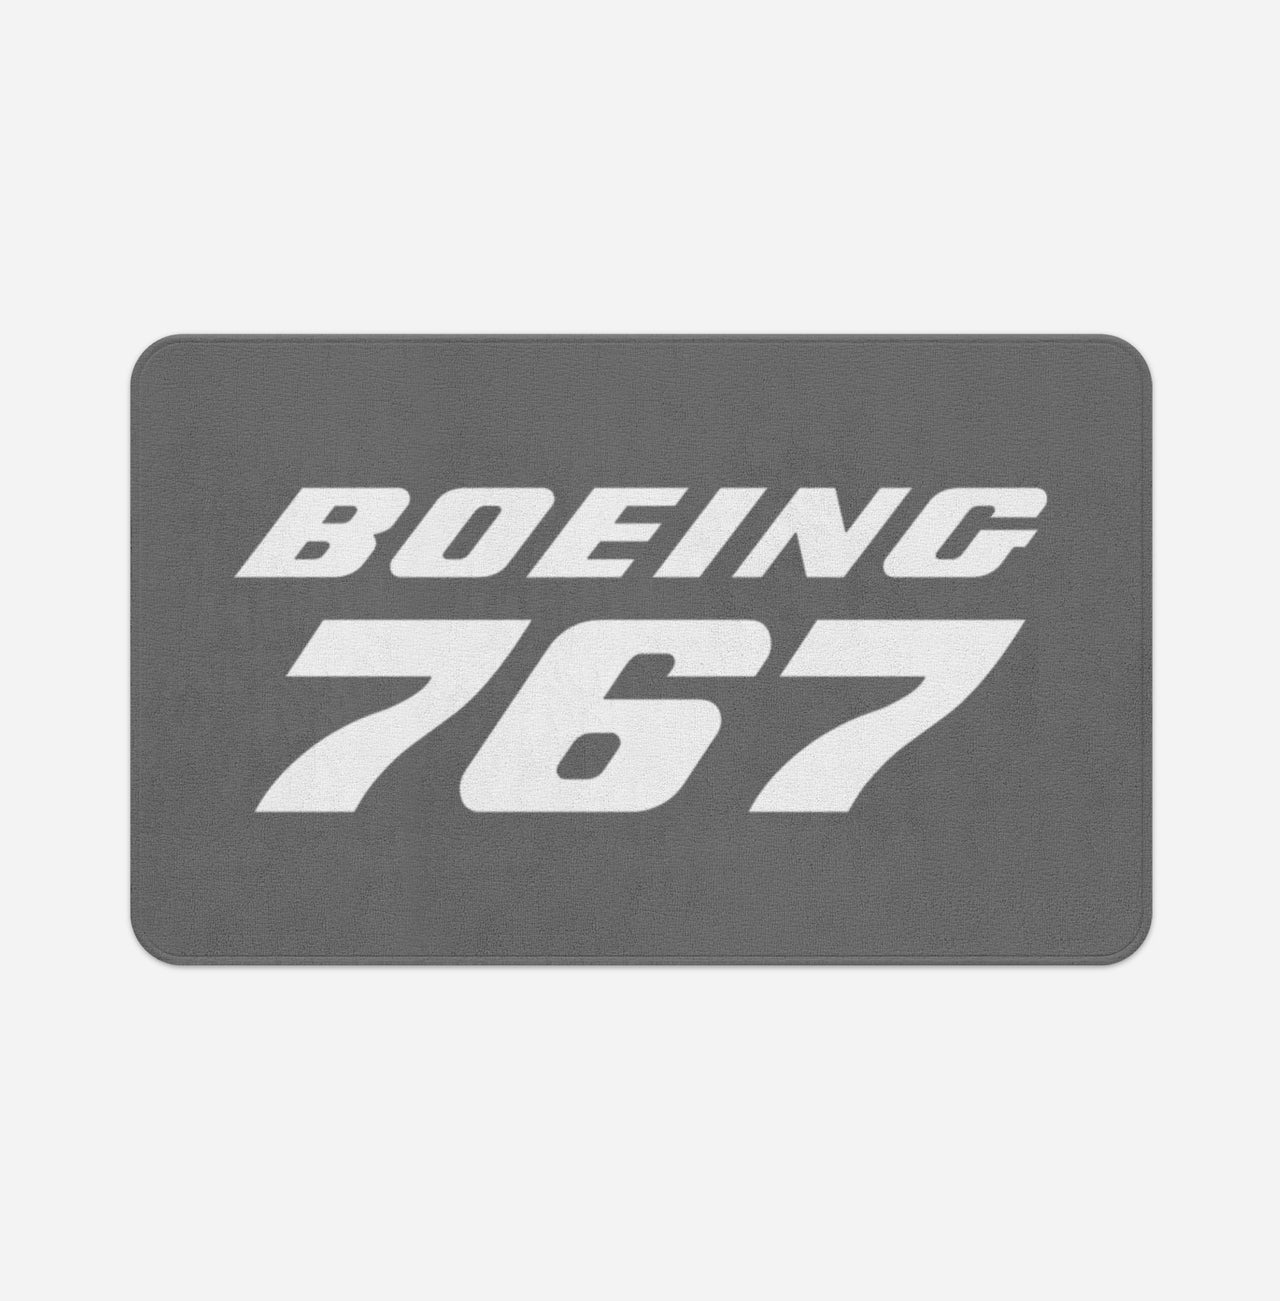 Boeing 767 & Text Designed Bath Mats